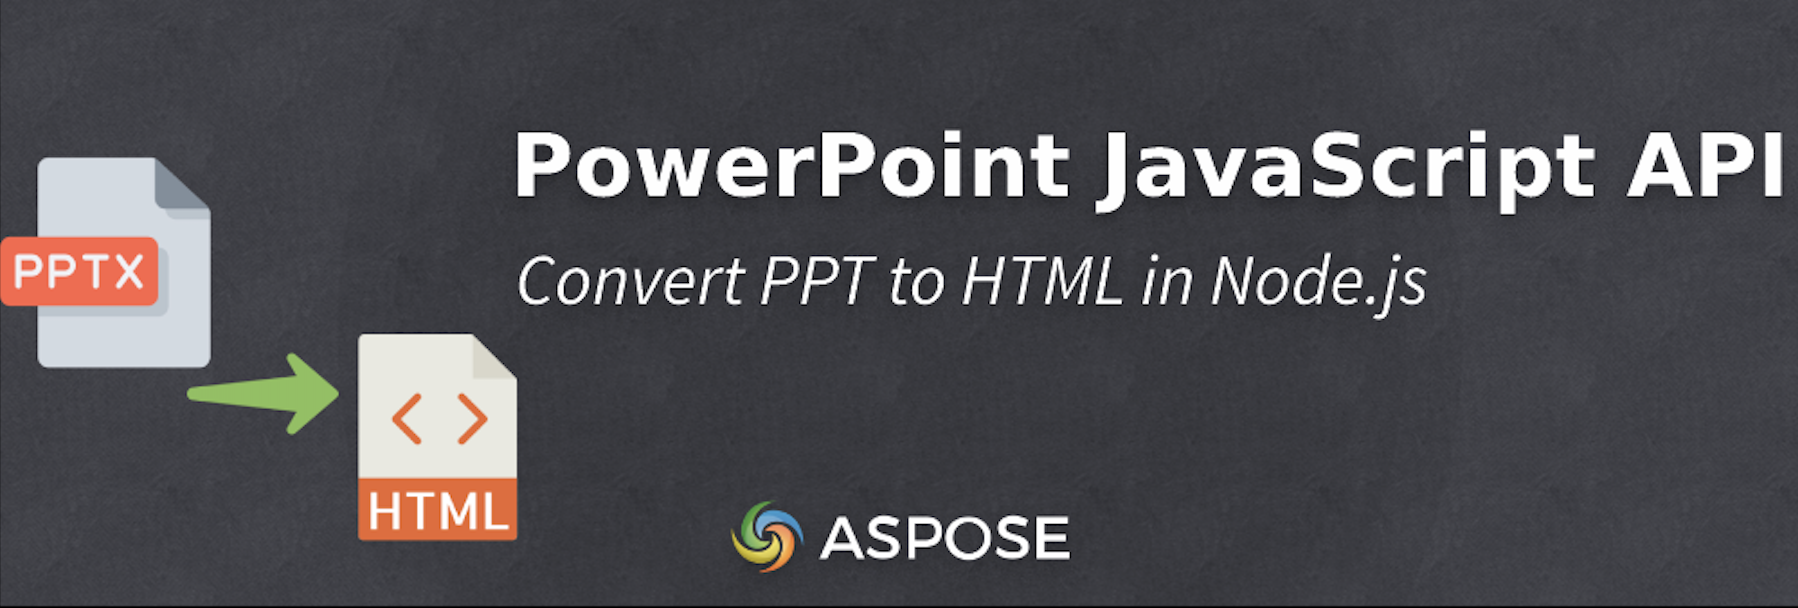 Konversi PPT ke HTML di Node.js - PowerPoint JavaScript API